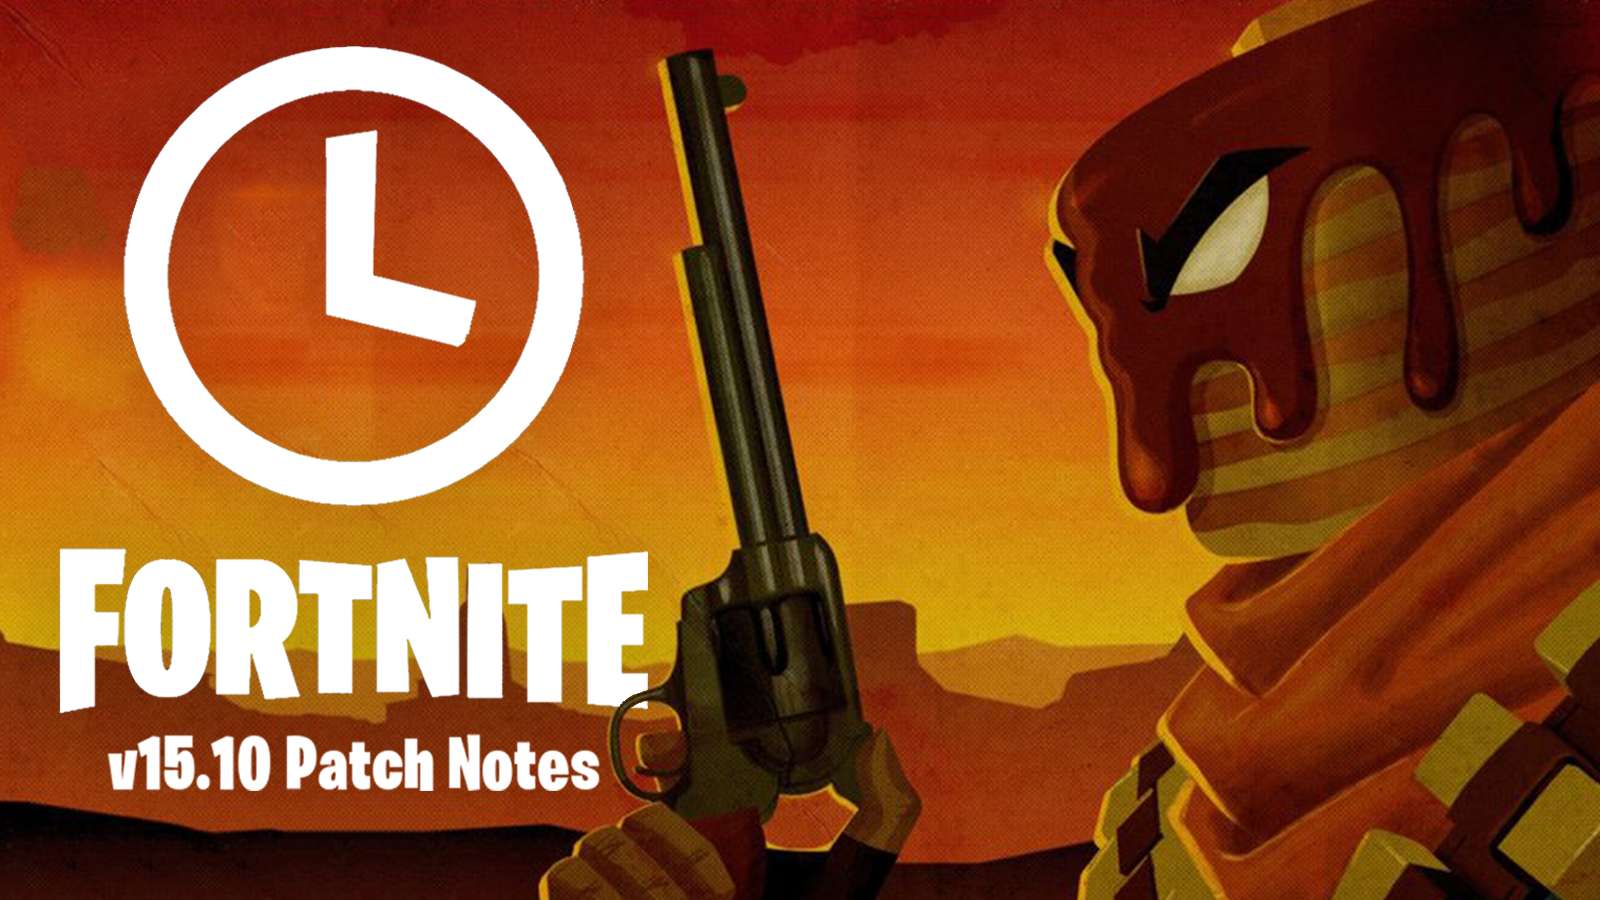 Fortnite update adds Mancake gun, Winterfest.